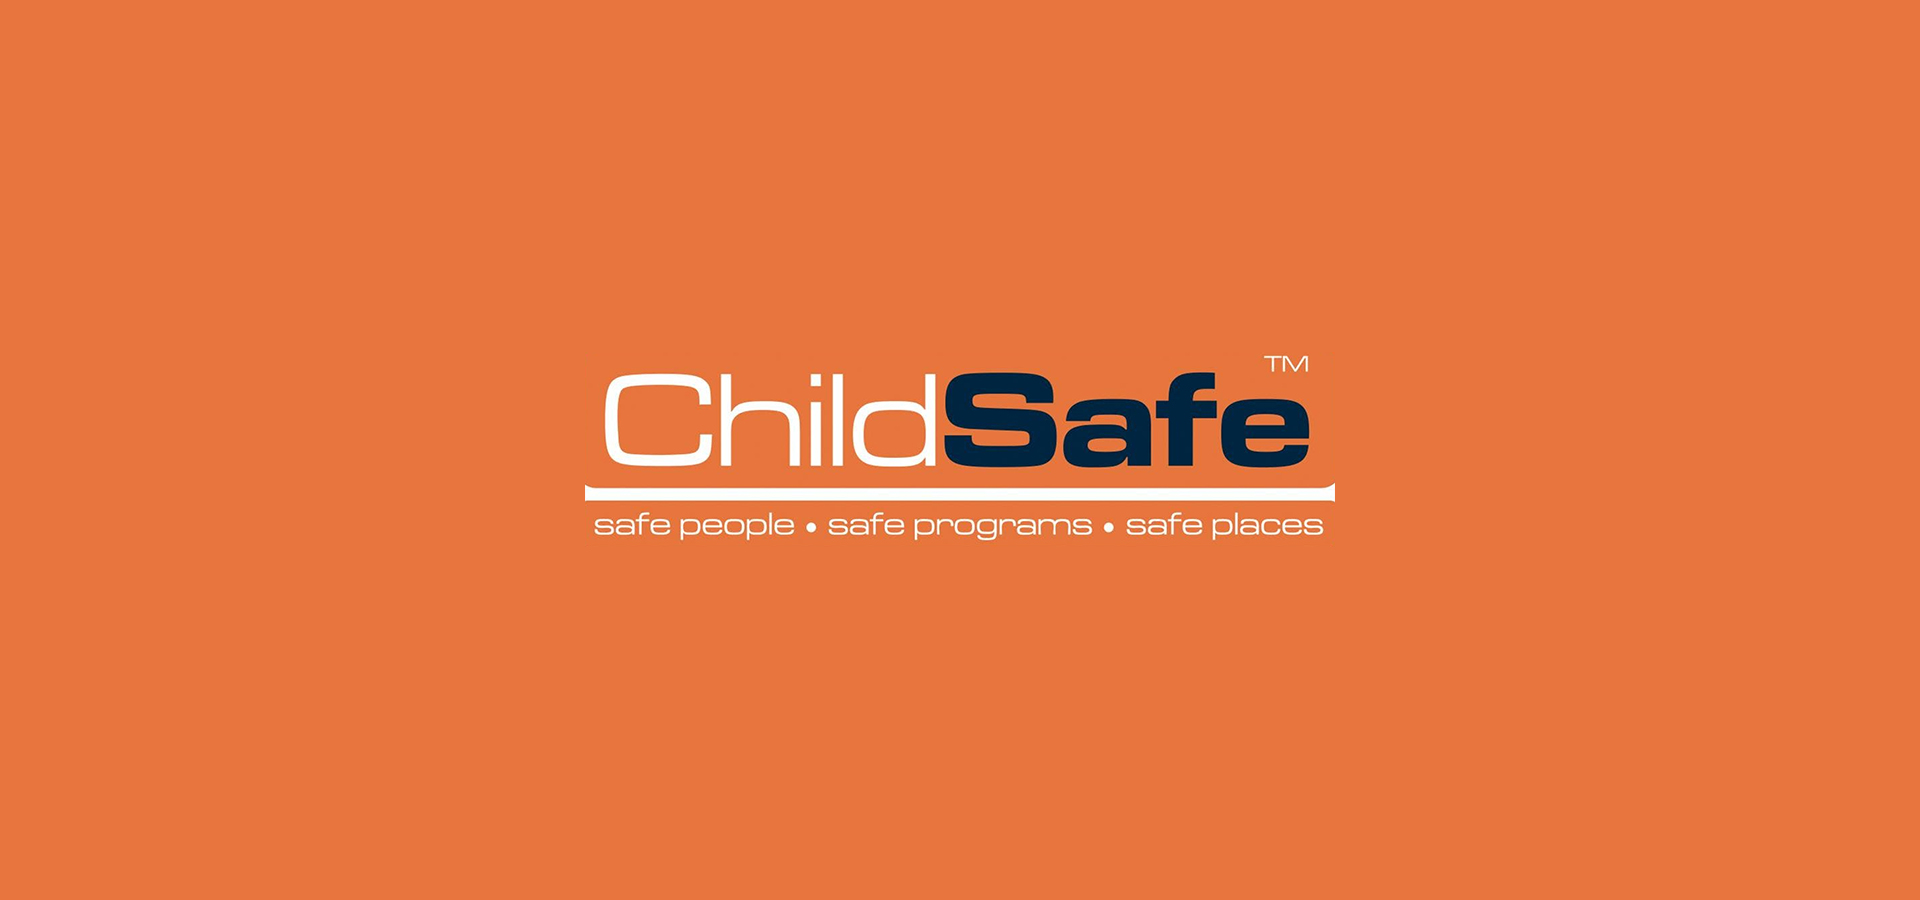 Child Safe header image